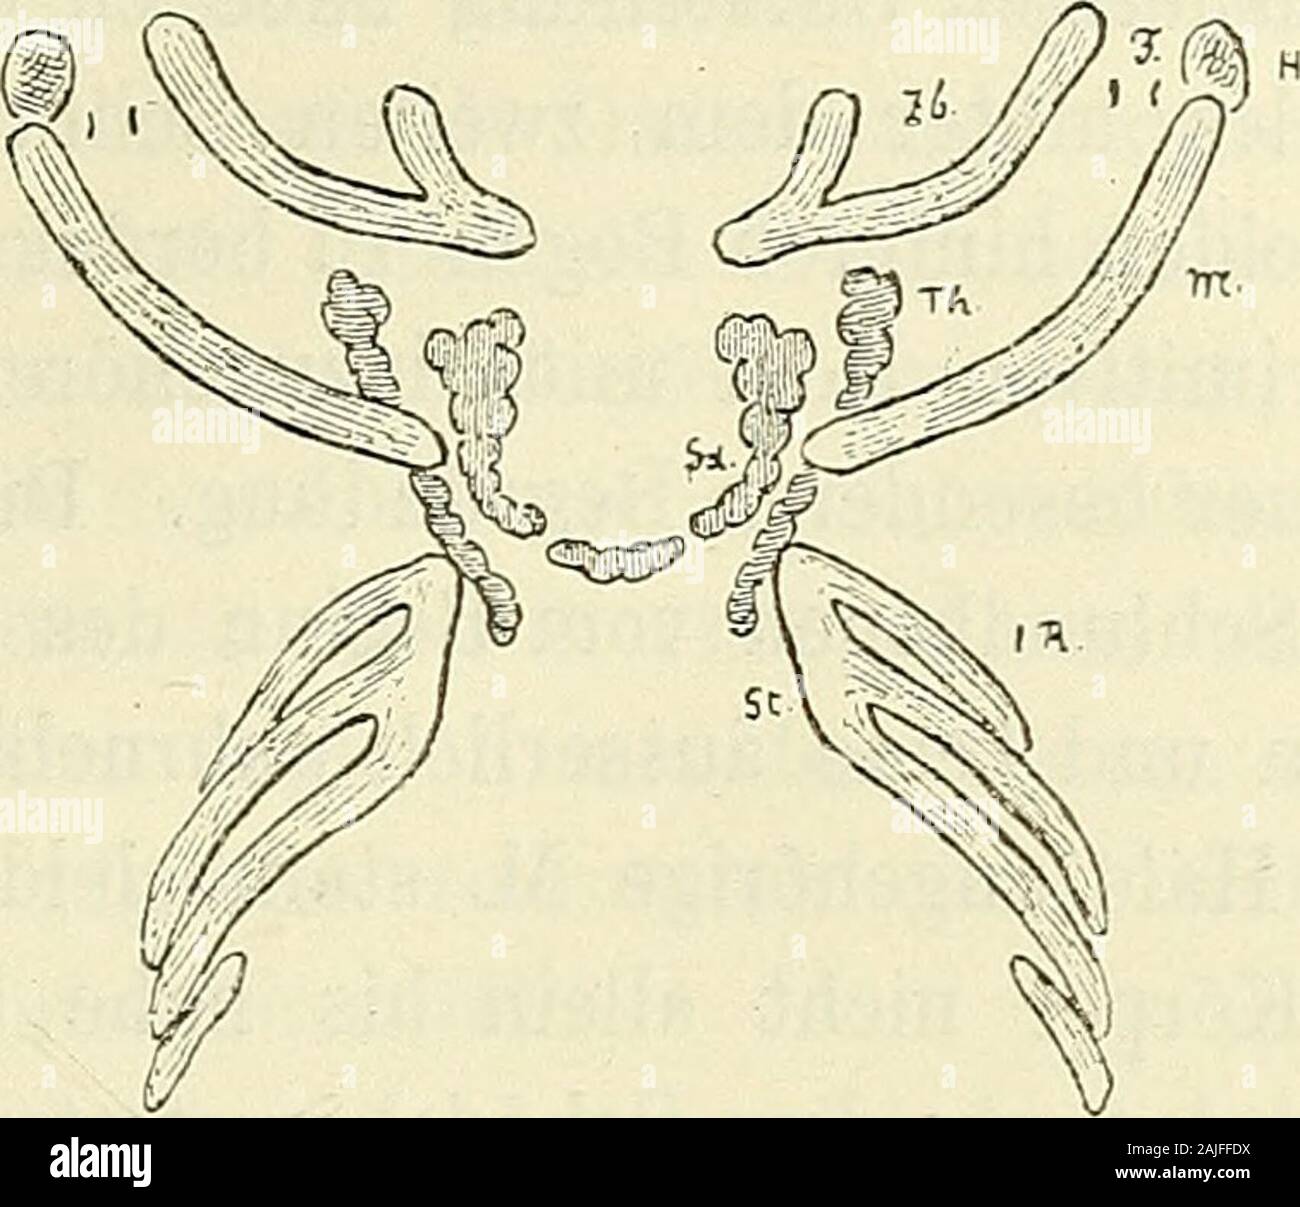 Anatomie menschlicher Embryonen . Verbindung mit der obersten Eippe davonda ist, bezeichnet genügend sicher den Ort des späteren Manubrium.Der MECKELsche Knorpel steigt bis beinahe zur Höhe des oberenBrustbeinrandes herab, er liegt indessen noch etwas vor diesem, daer ja nicht im Kinn ausläuft. Um an diesen Eiguren Lage undRichtung des M. sternocleidomastoideus zu bestimmen, kann mandas Eoramen stylomastoideum benützen, dessen Lage an den Durch-schnitten leicht zu ermitteln ist und das ich an beiden Eiguren ein-getragen habe. Der Ort des Proc. mast. wird etwas seitlich davonzu legen sein. Zieh Stock Photo